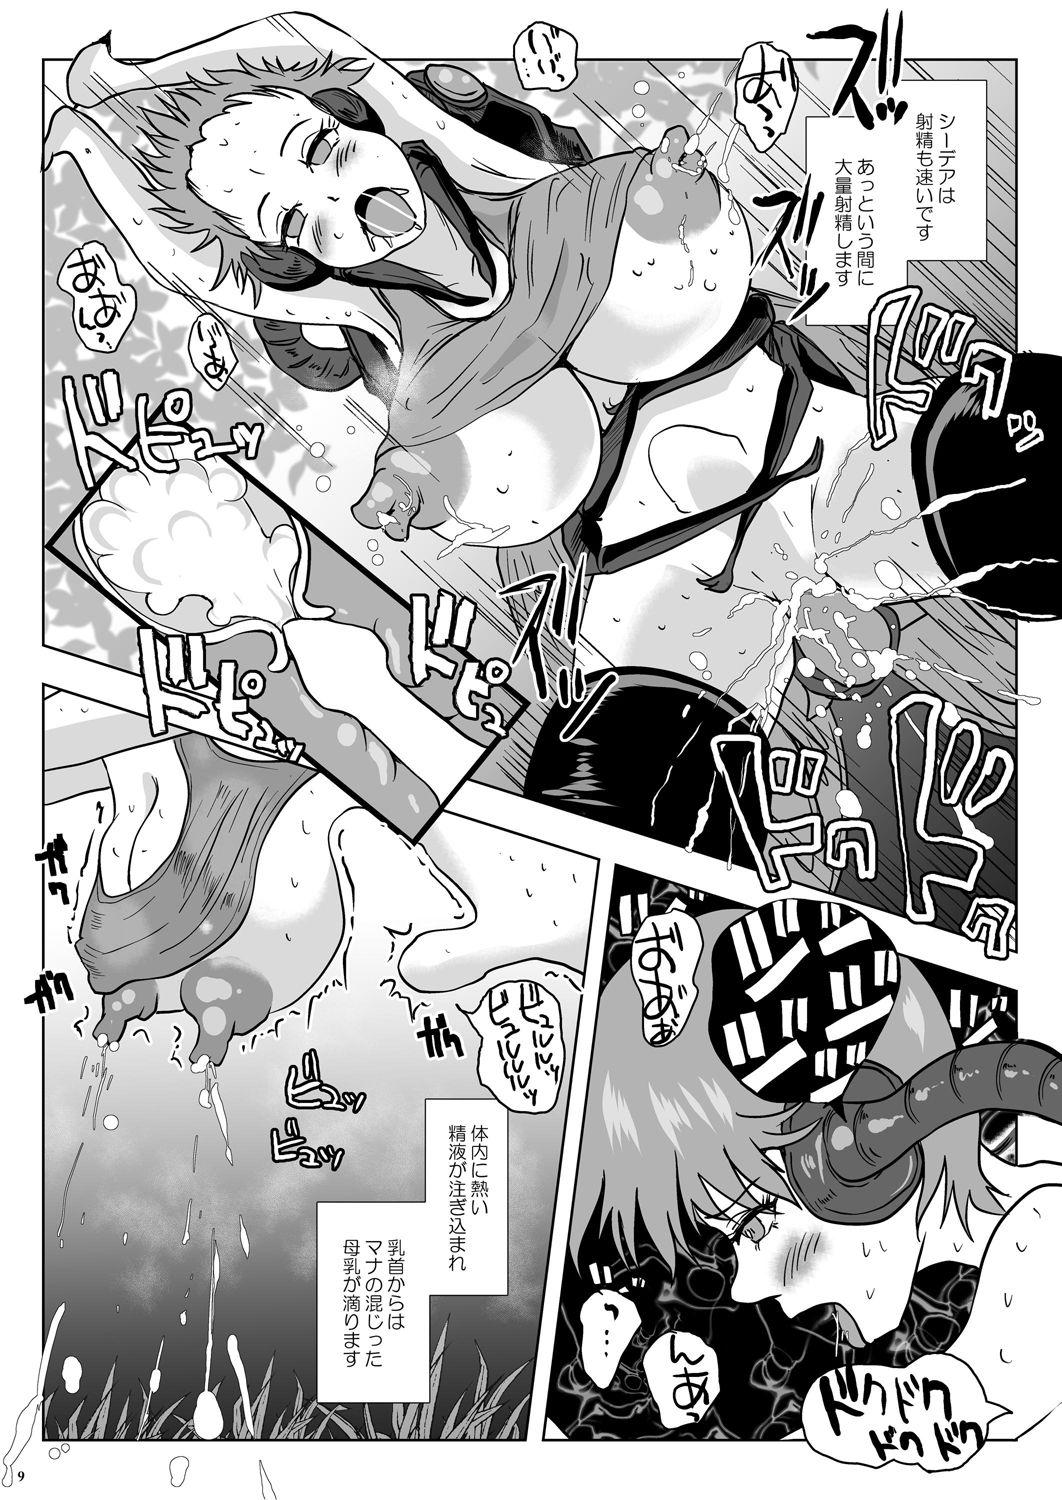 Gaping Go To Larvataurs #02 "Hokaku Chuunyuu Nakadashi Mushi no Miyako" Porno Amateur - Page 9